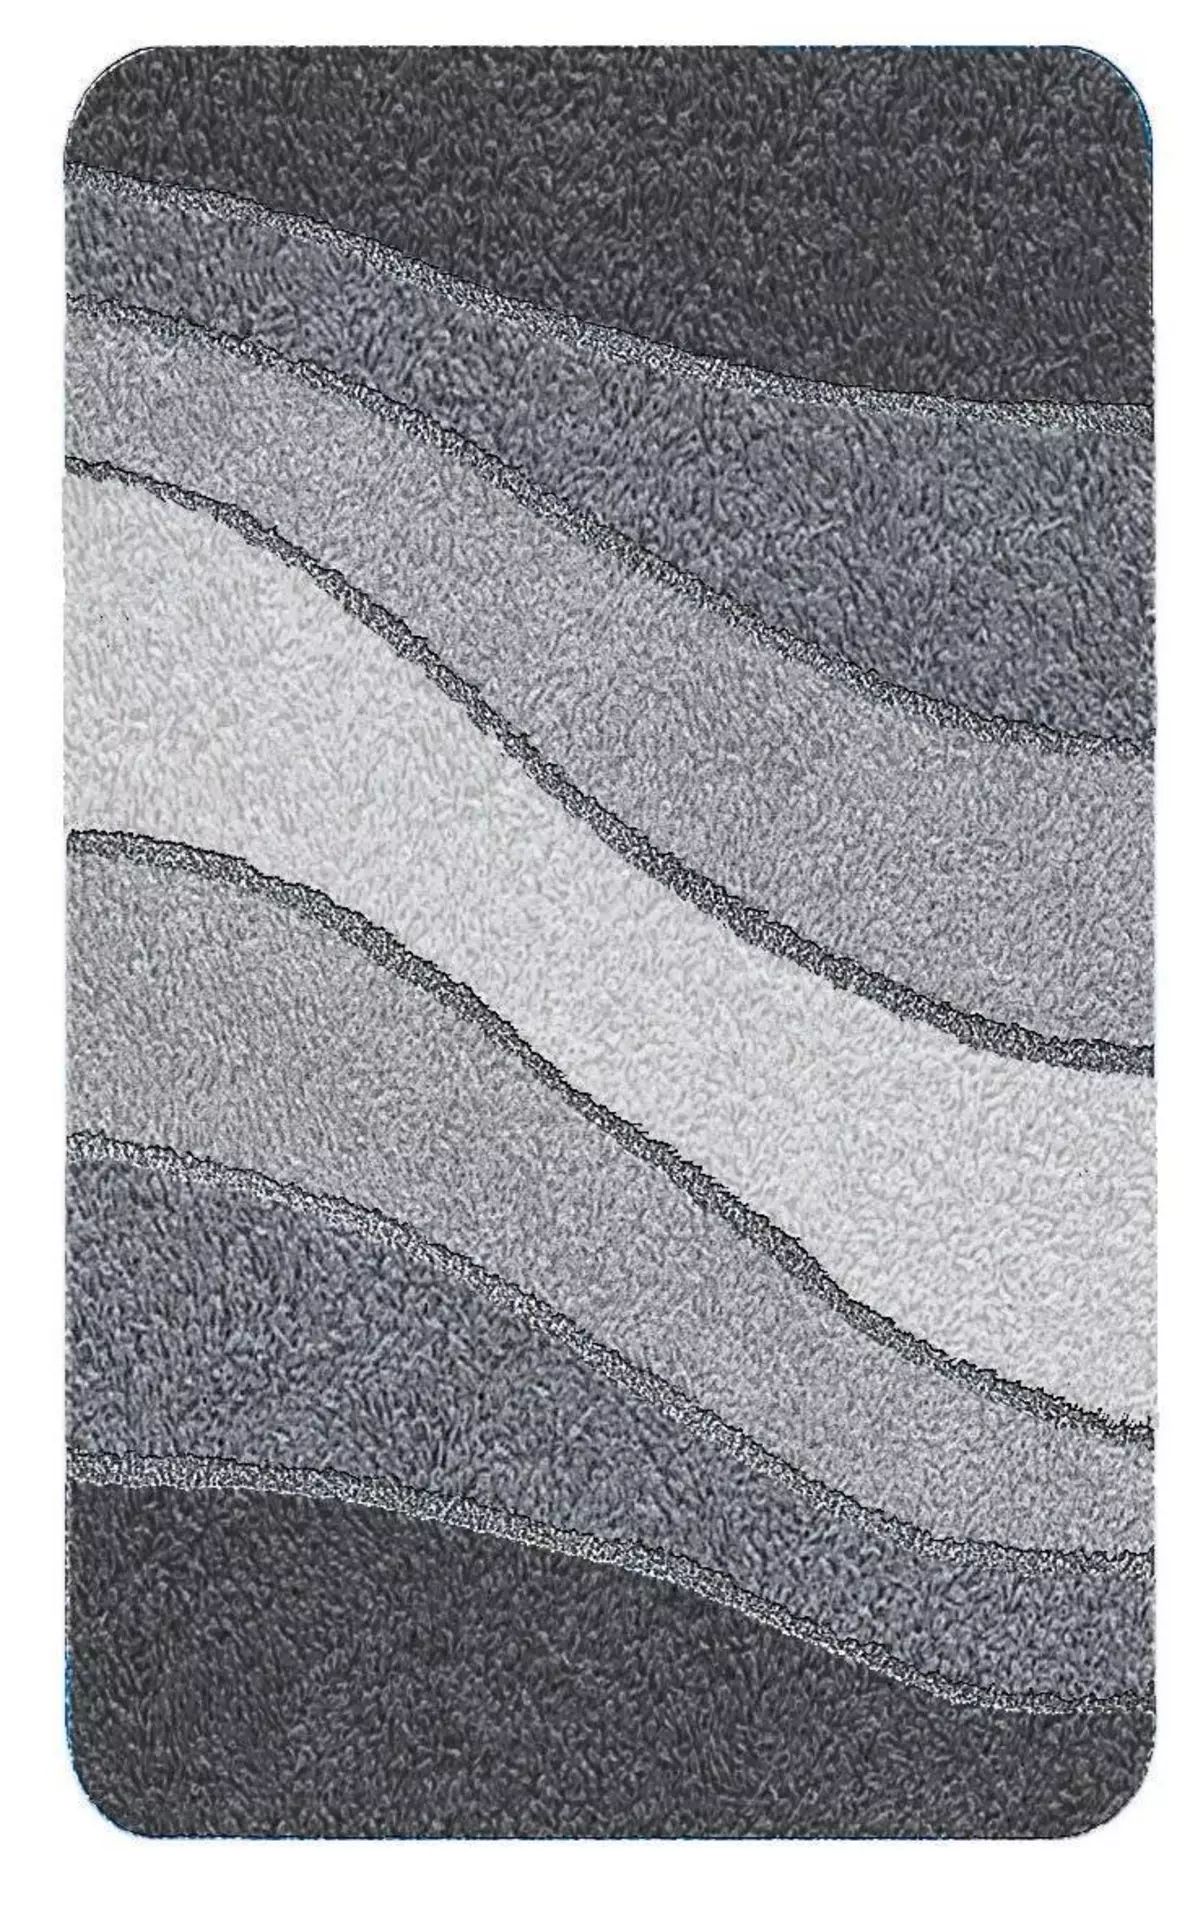 Badteppich Ocean Meusch Textil 100 x 2 x 60 cm